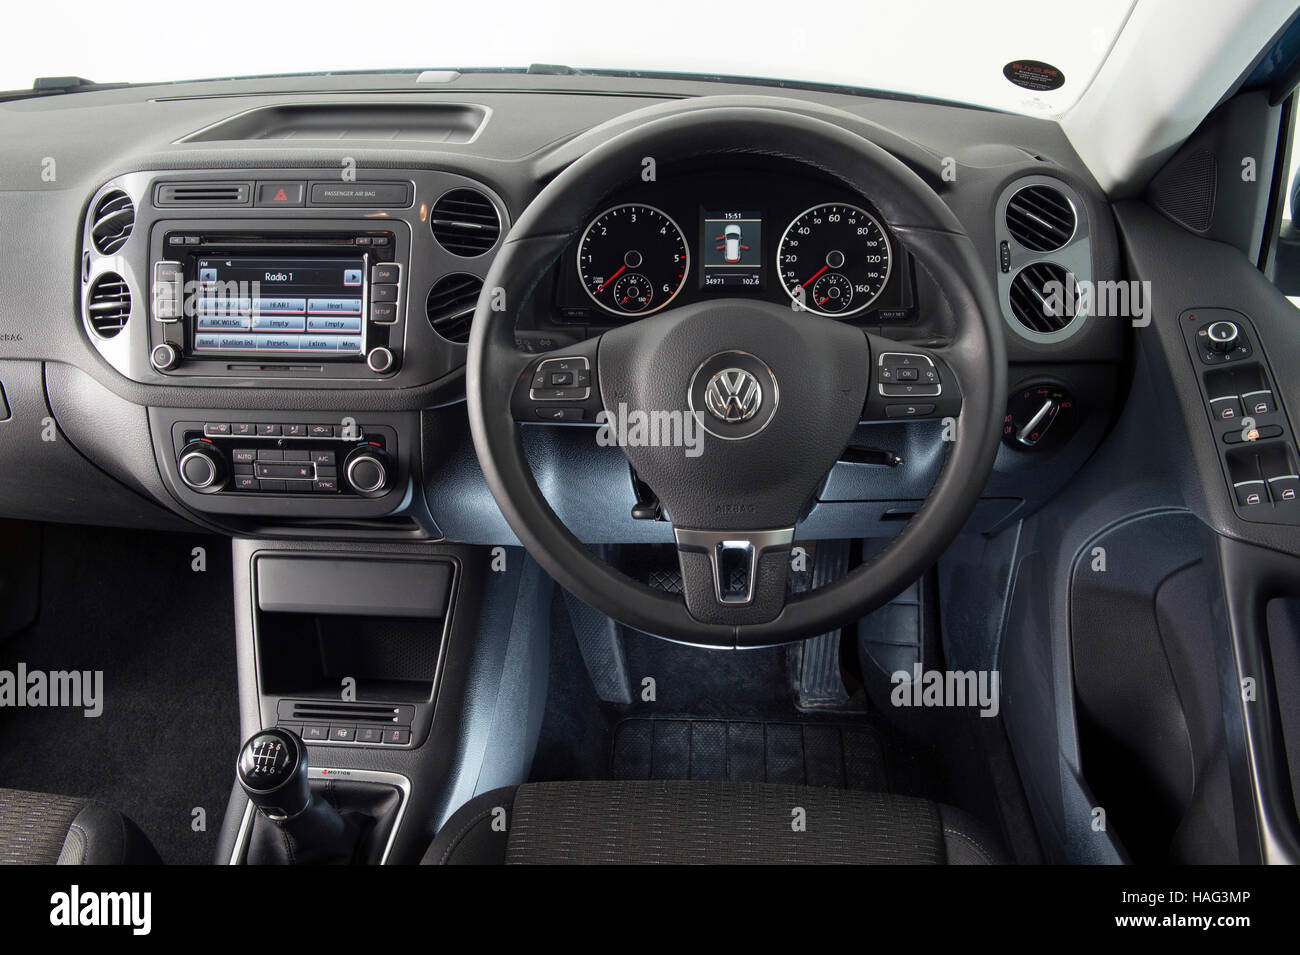 2012 Volkswagen Tiguan Stock Photo